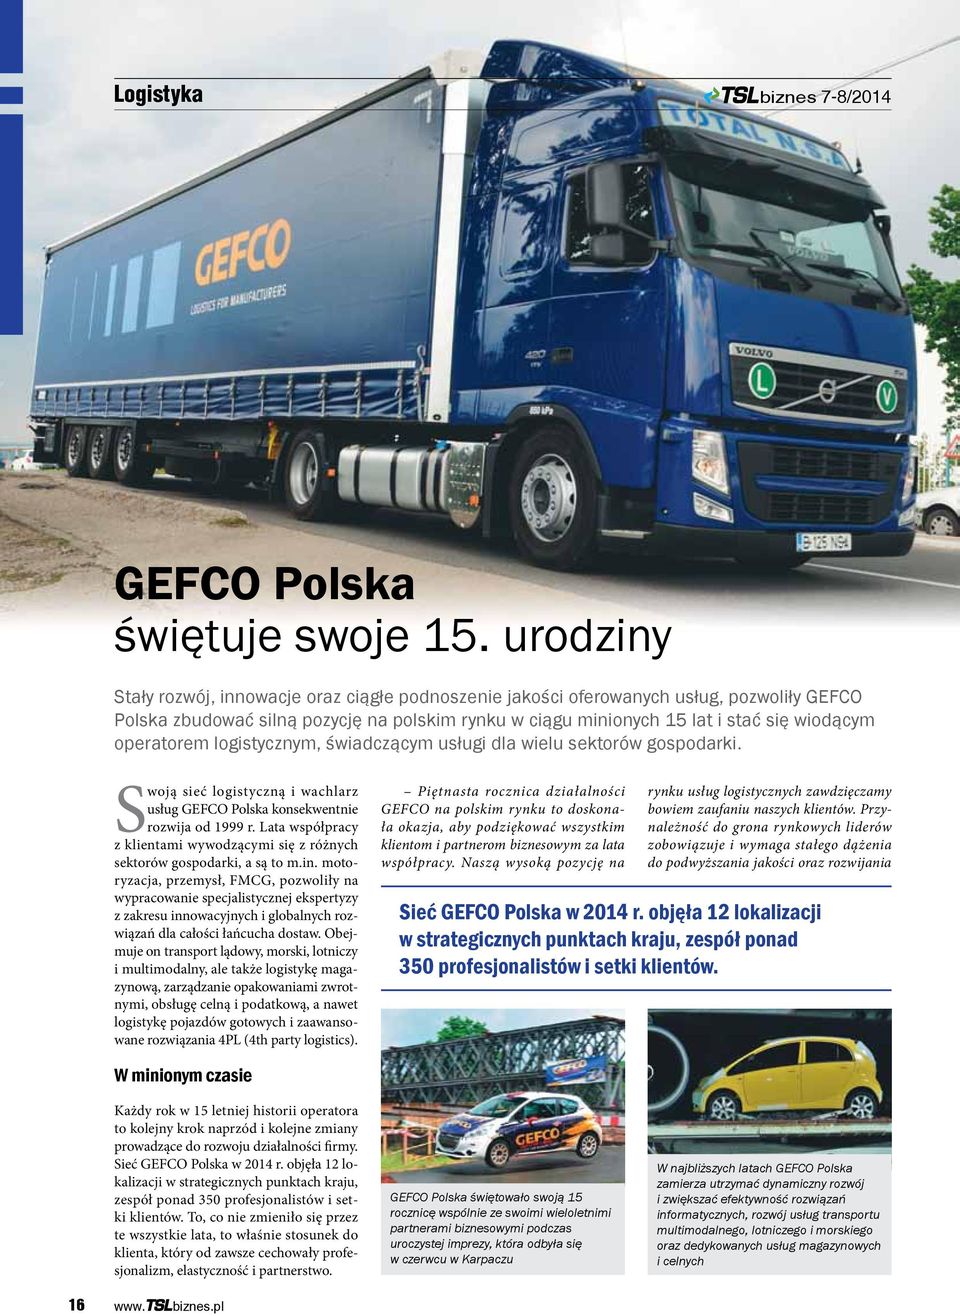 operatorem logistycznym, świadczącym usługi dla wielu sektorów gospodarki. Swoją sieć logistyczną i wachlarz usług GEFCO Polska konsekwentnie rozwija od 1999 r.